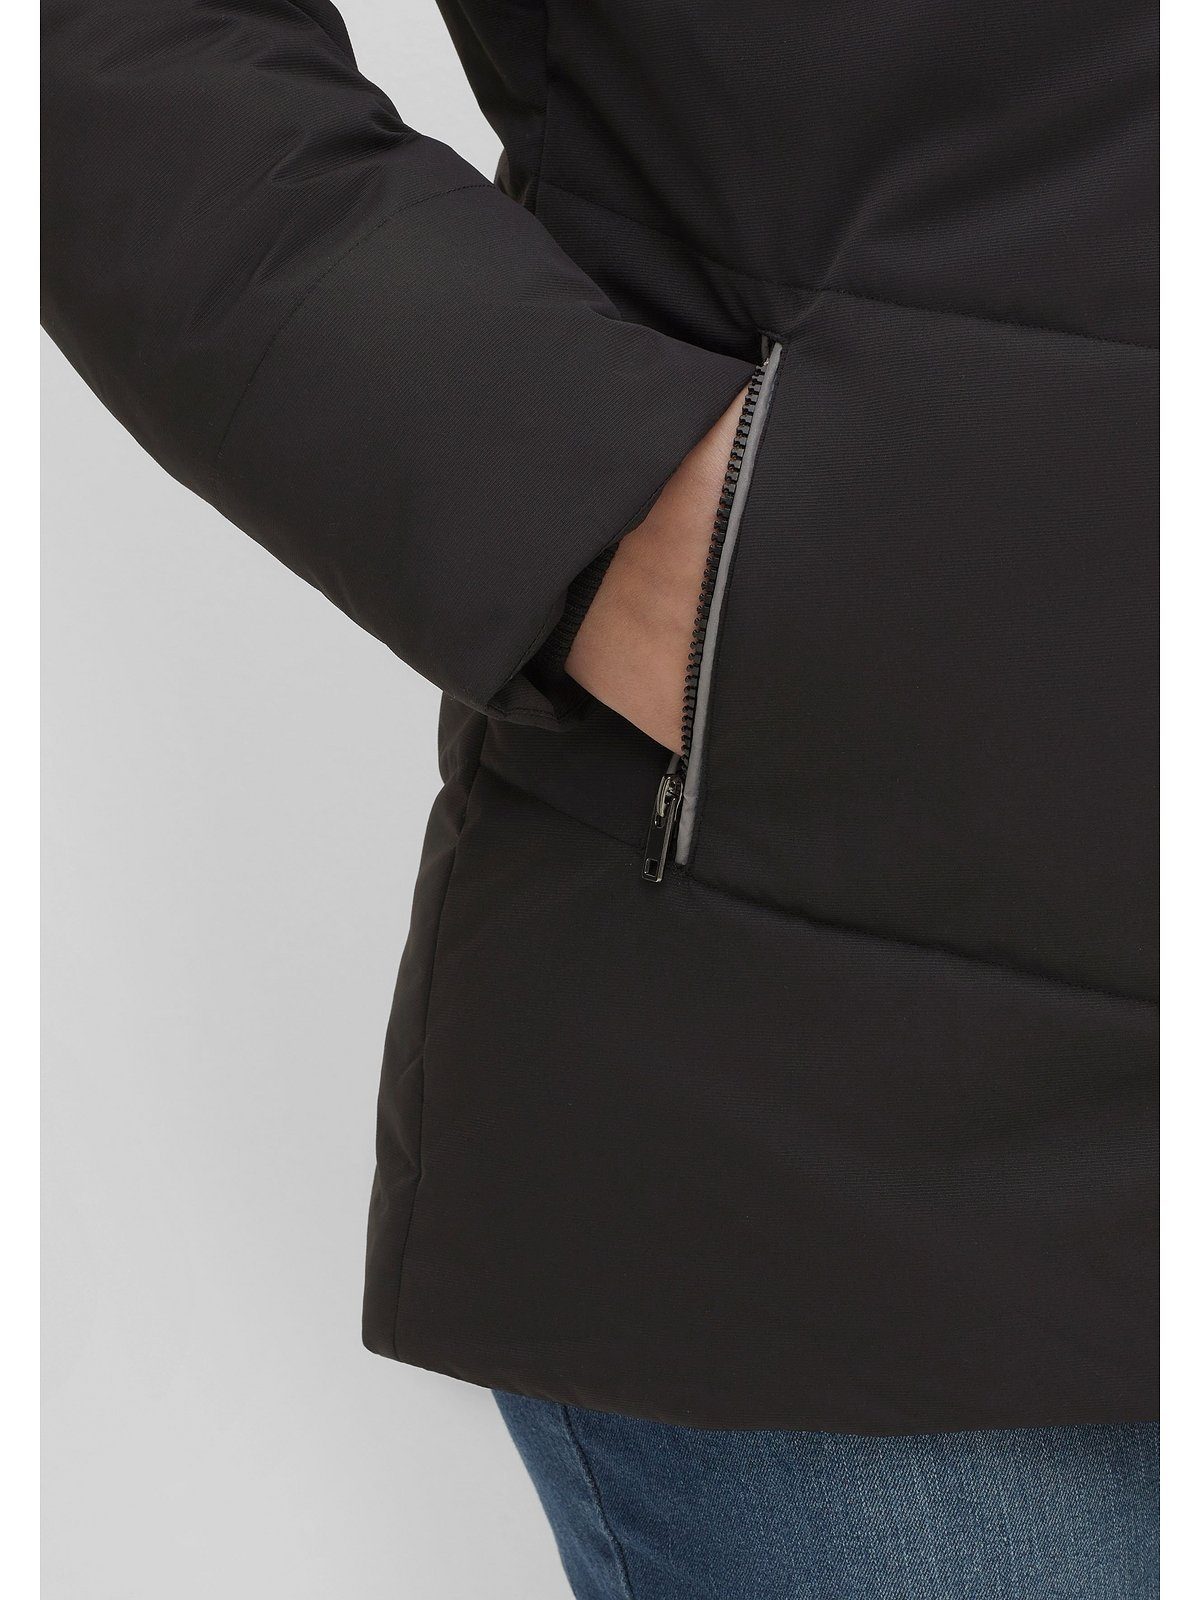 Sheego Outdoorjacke Große Größen mit leicht Material schwarz strukturiertes Stehkragen